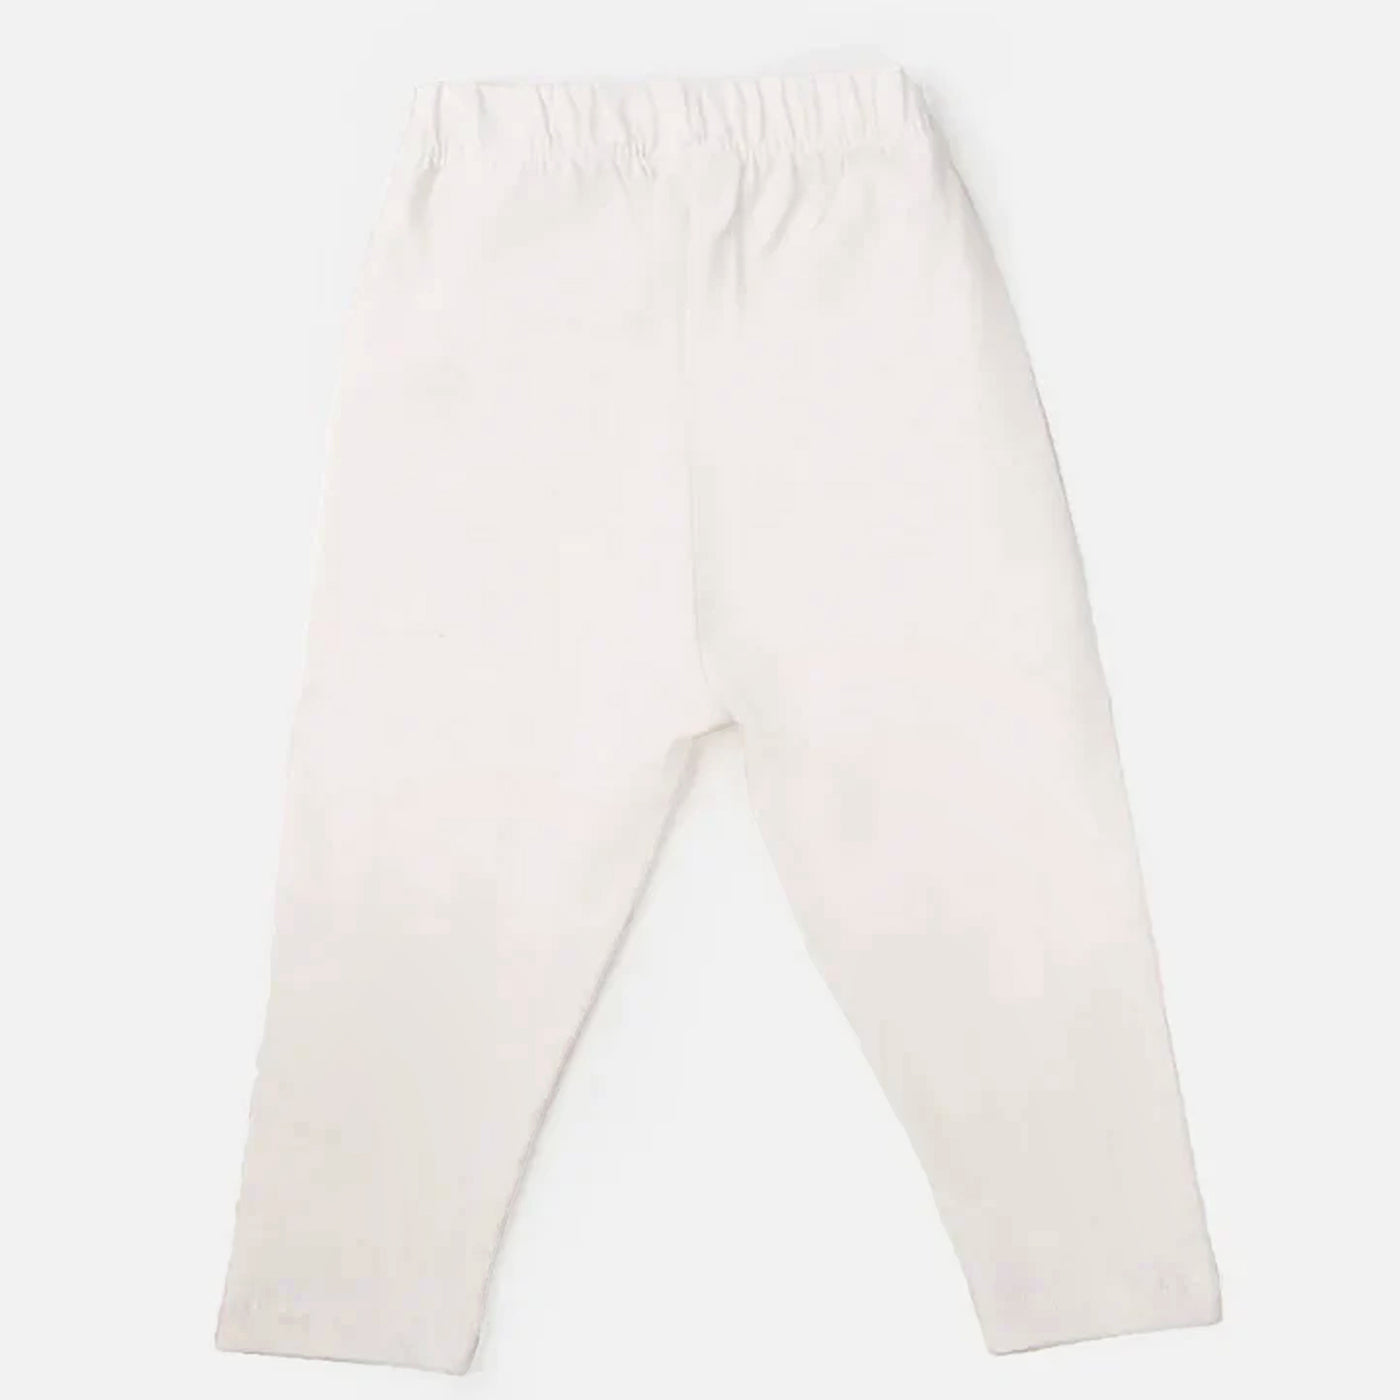 Boys Pocket Pajama F1A-23 - White